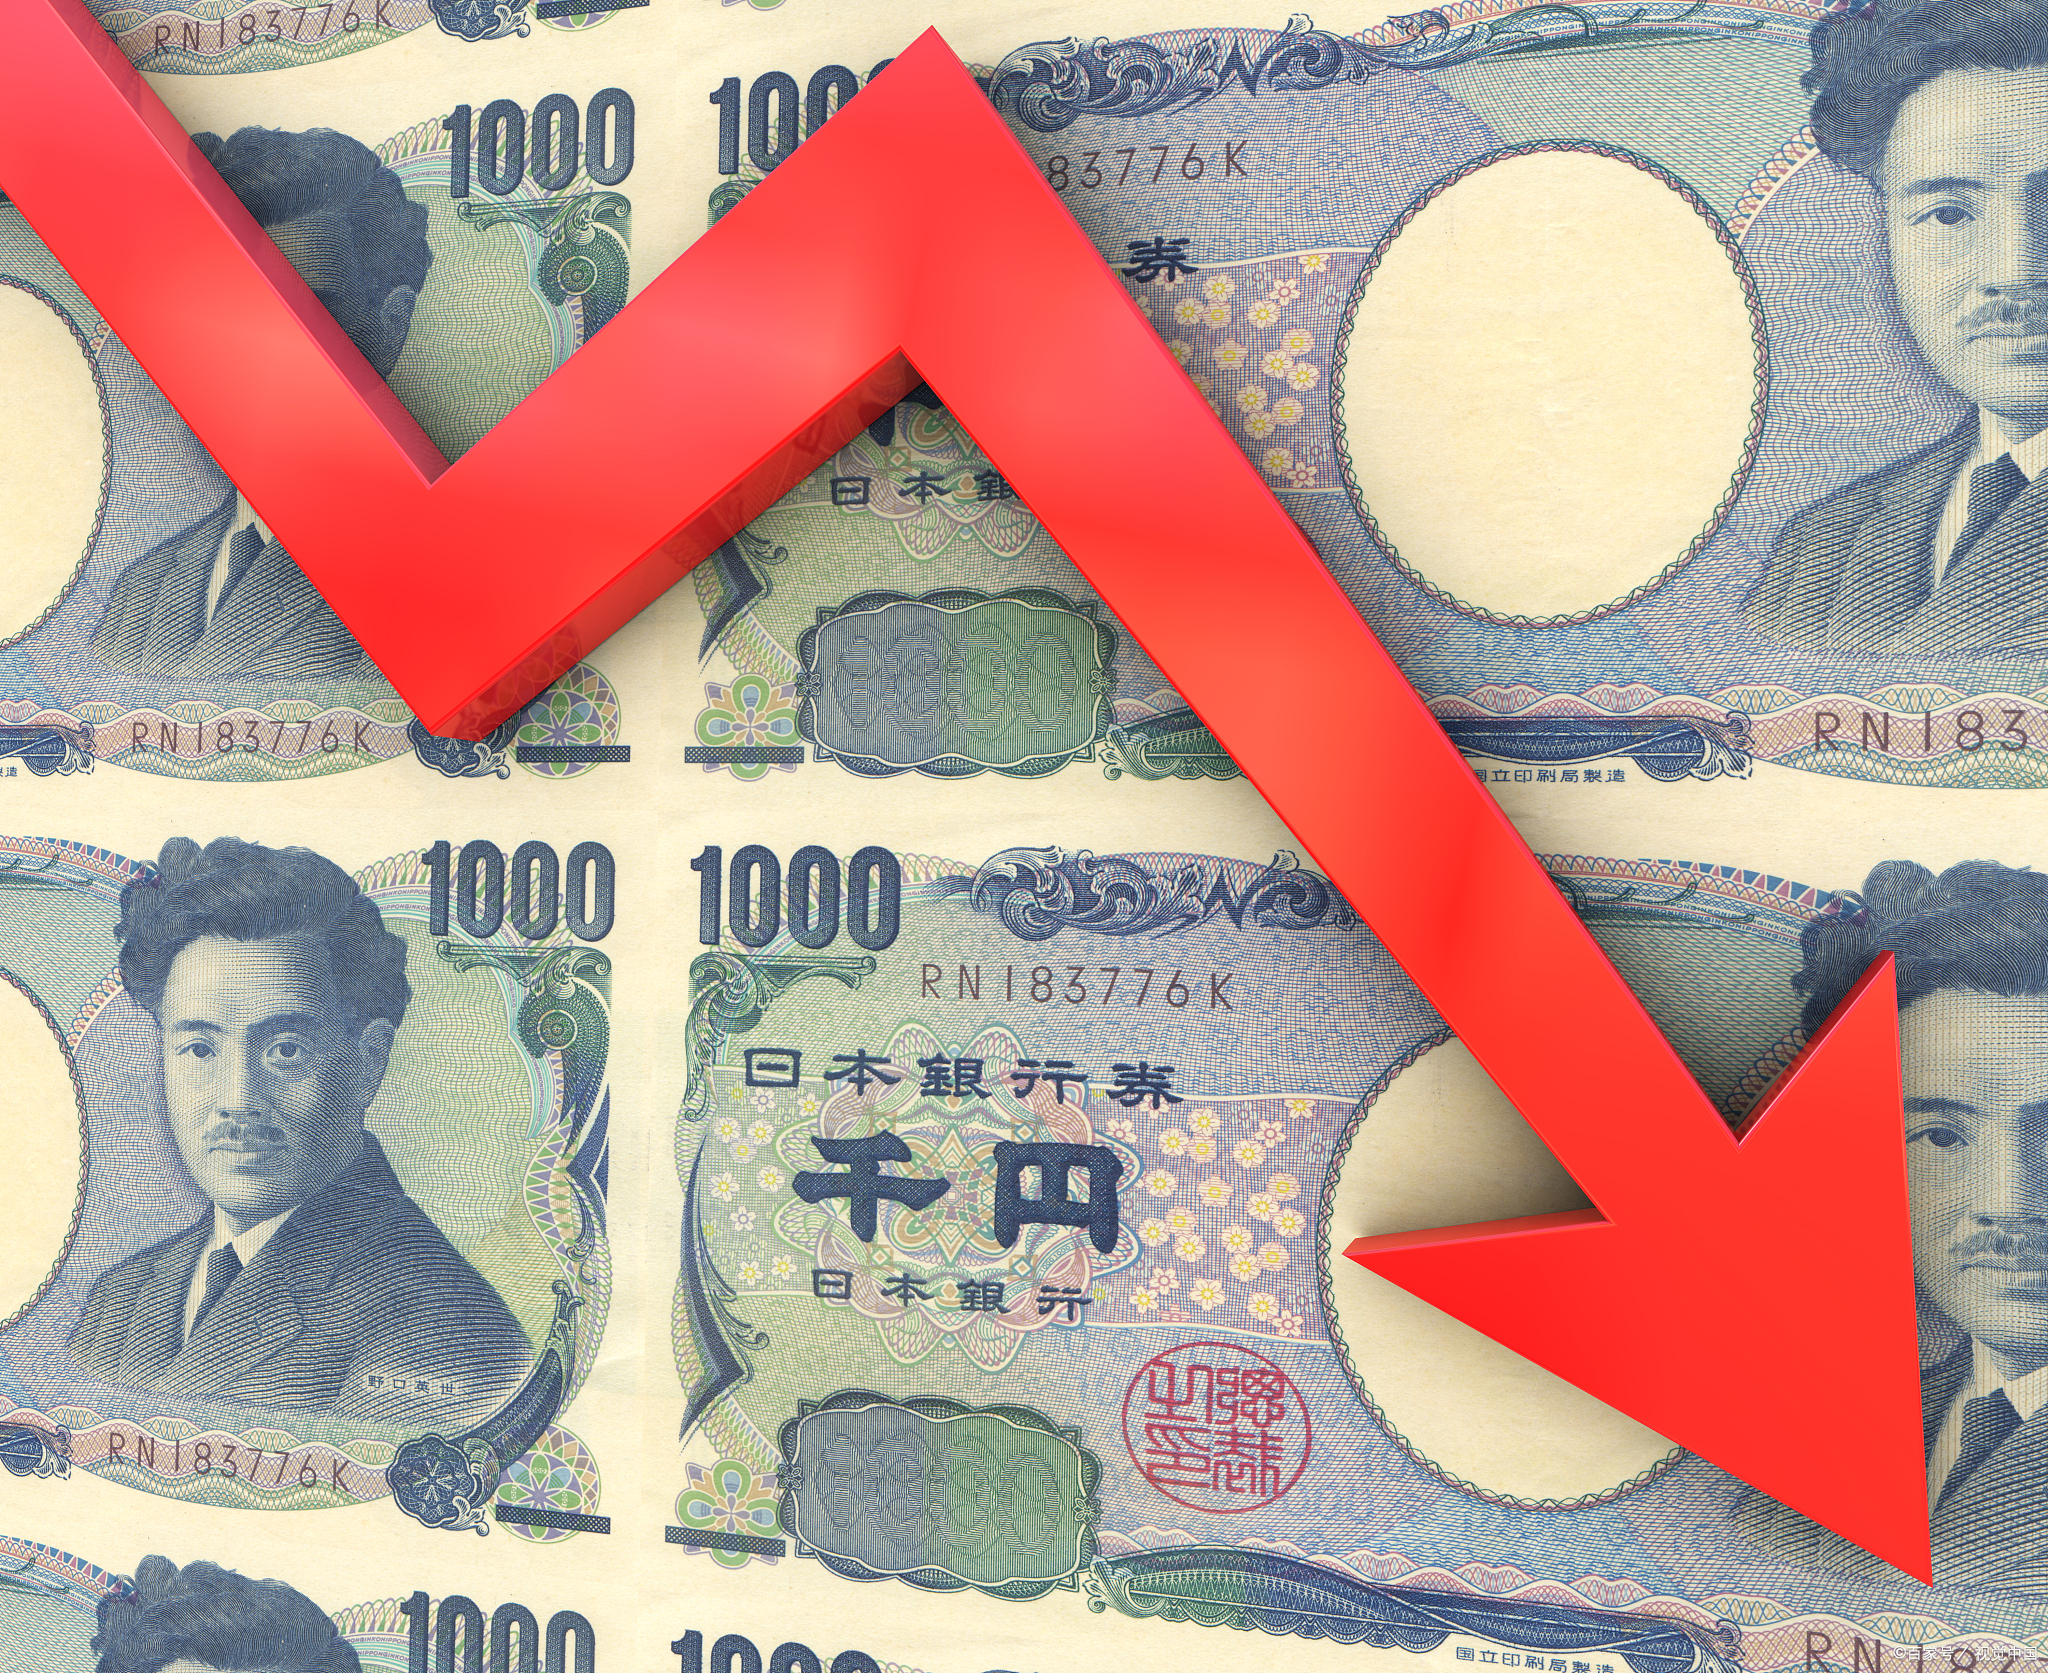 日本正在给人民币资产上重要的一课